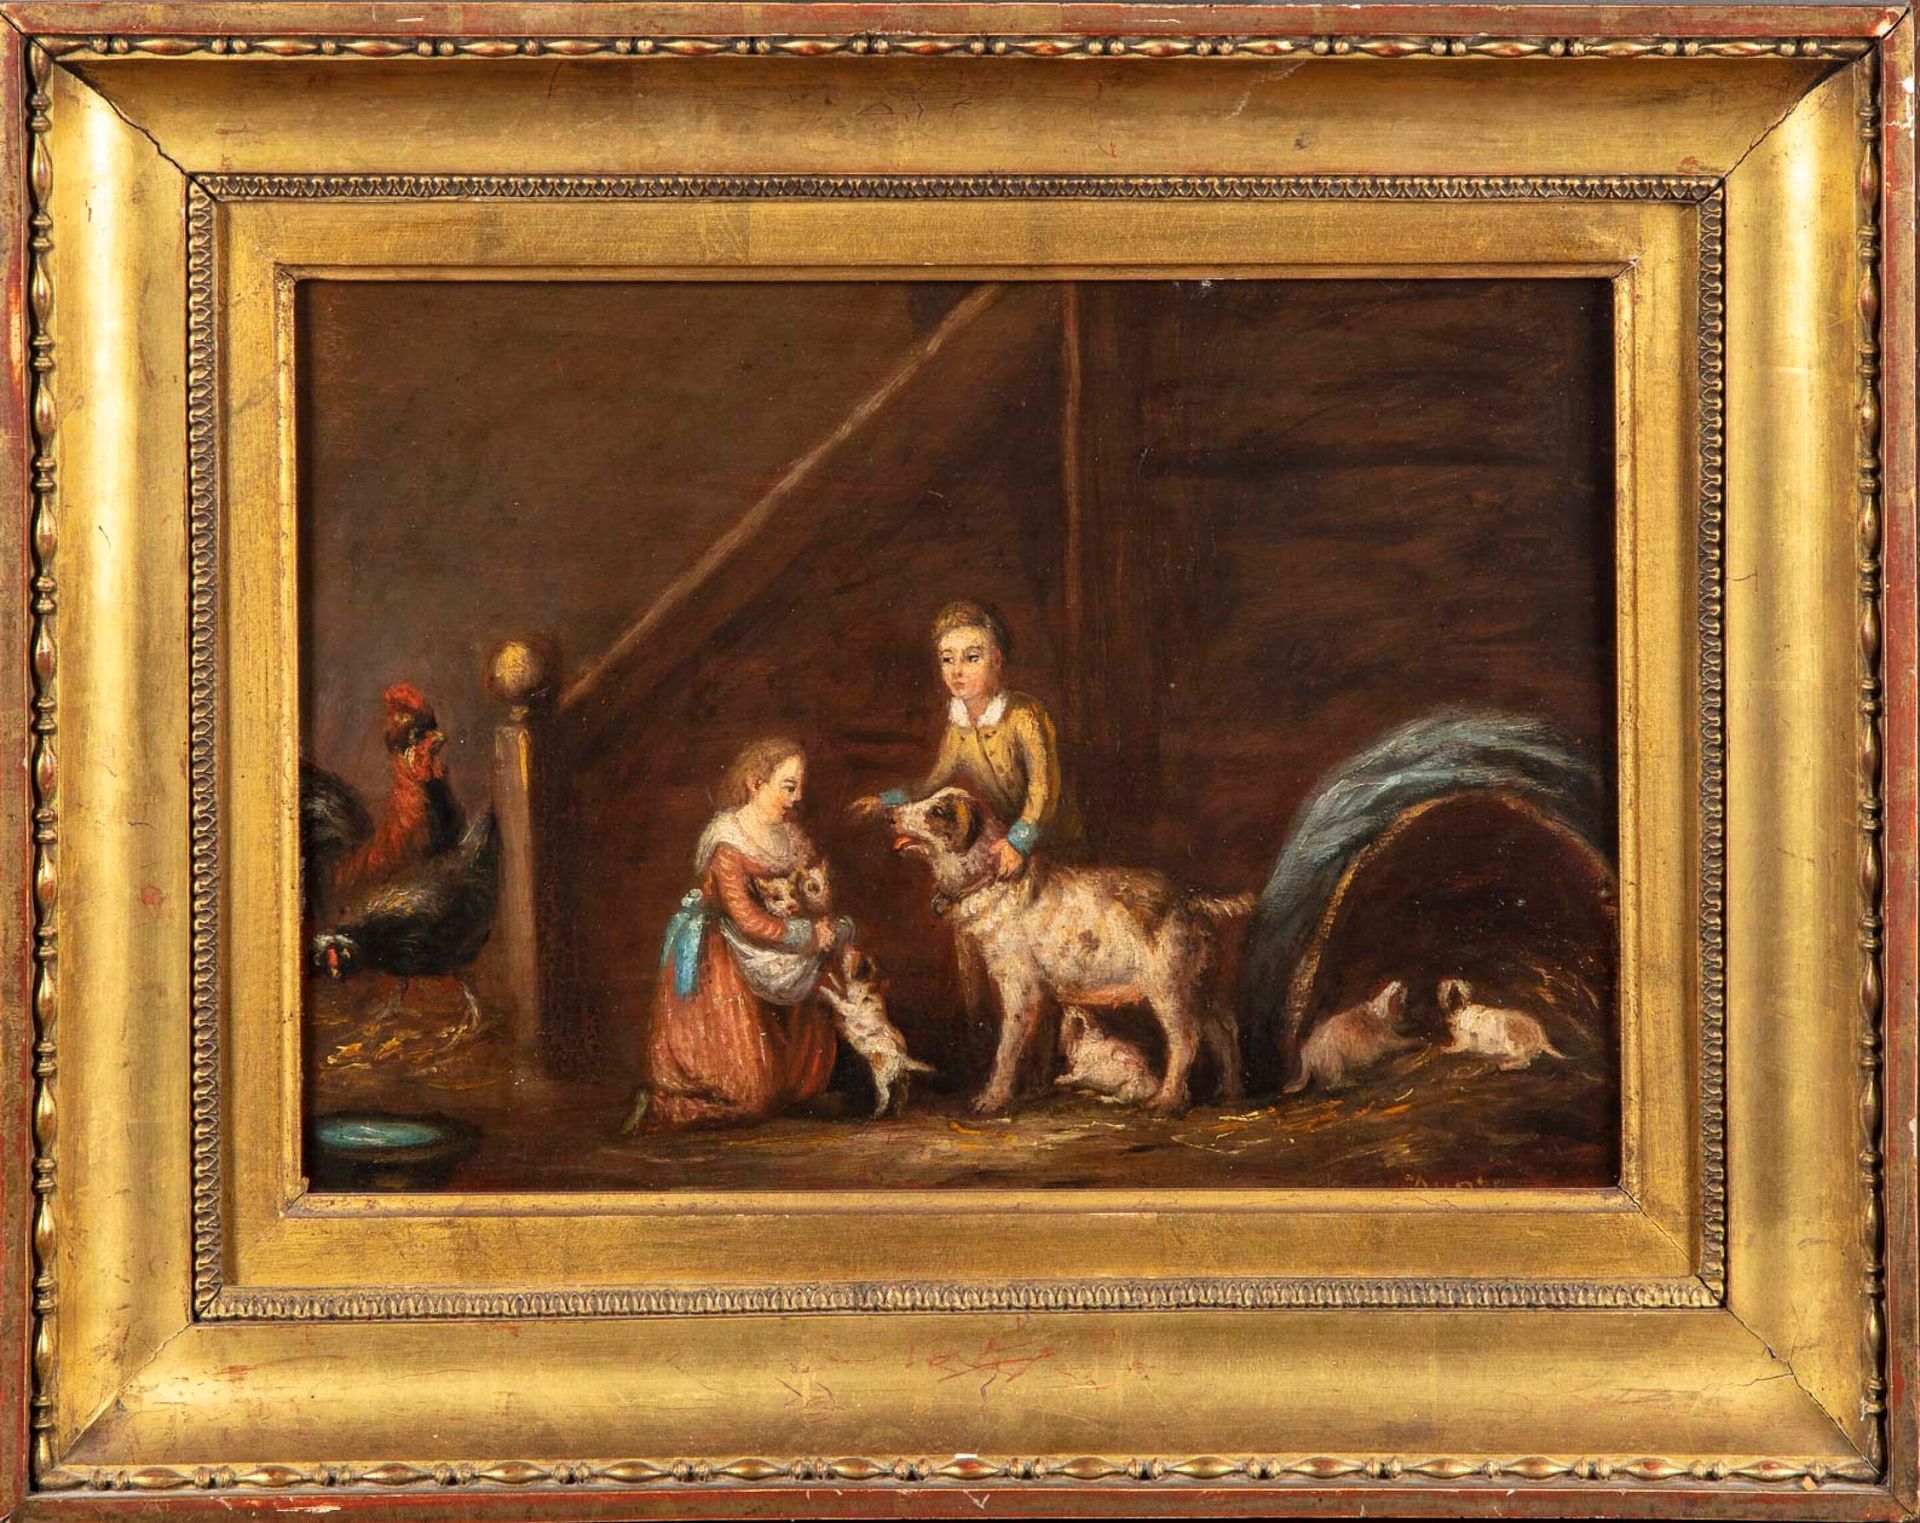 Ecole Flamande XIXè ESCUELA DE FLEMES del siglo XIX

Dos niños con su perra y su&hellip;